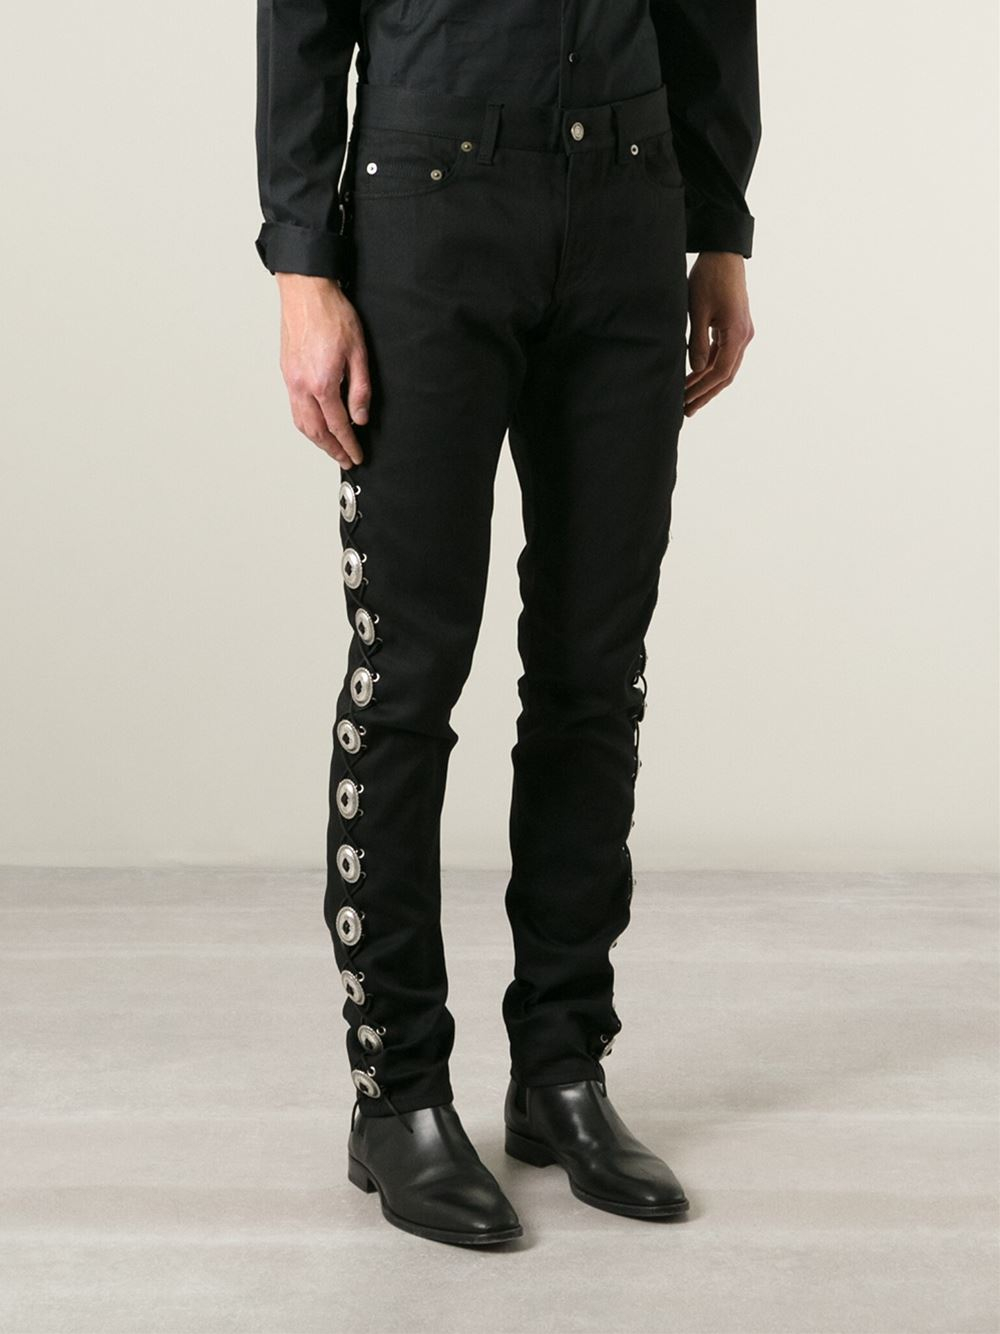 Saint Laurent Concho Detail Jeans in Black for Men - Lyst